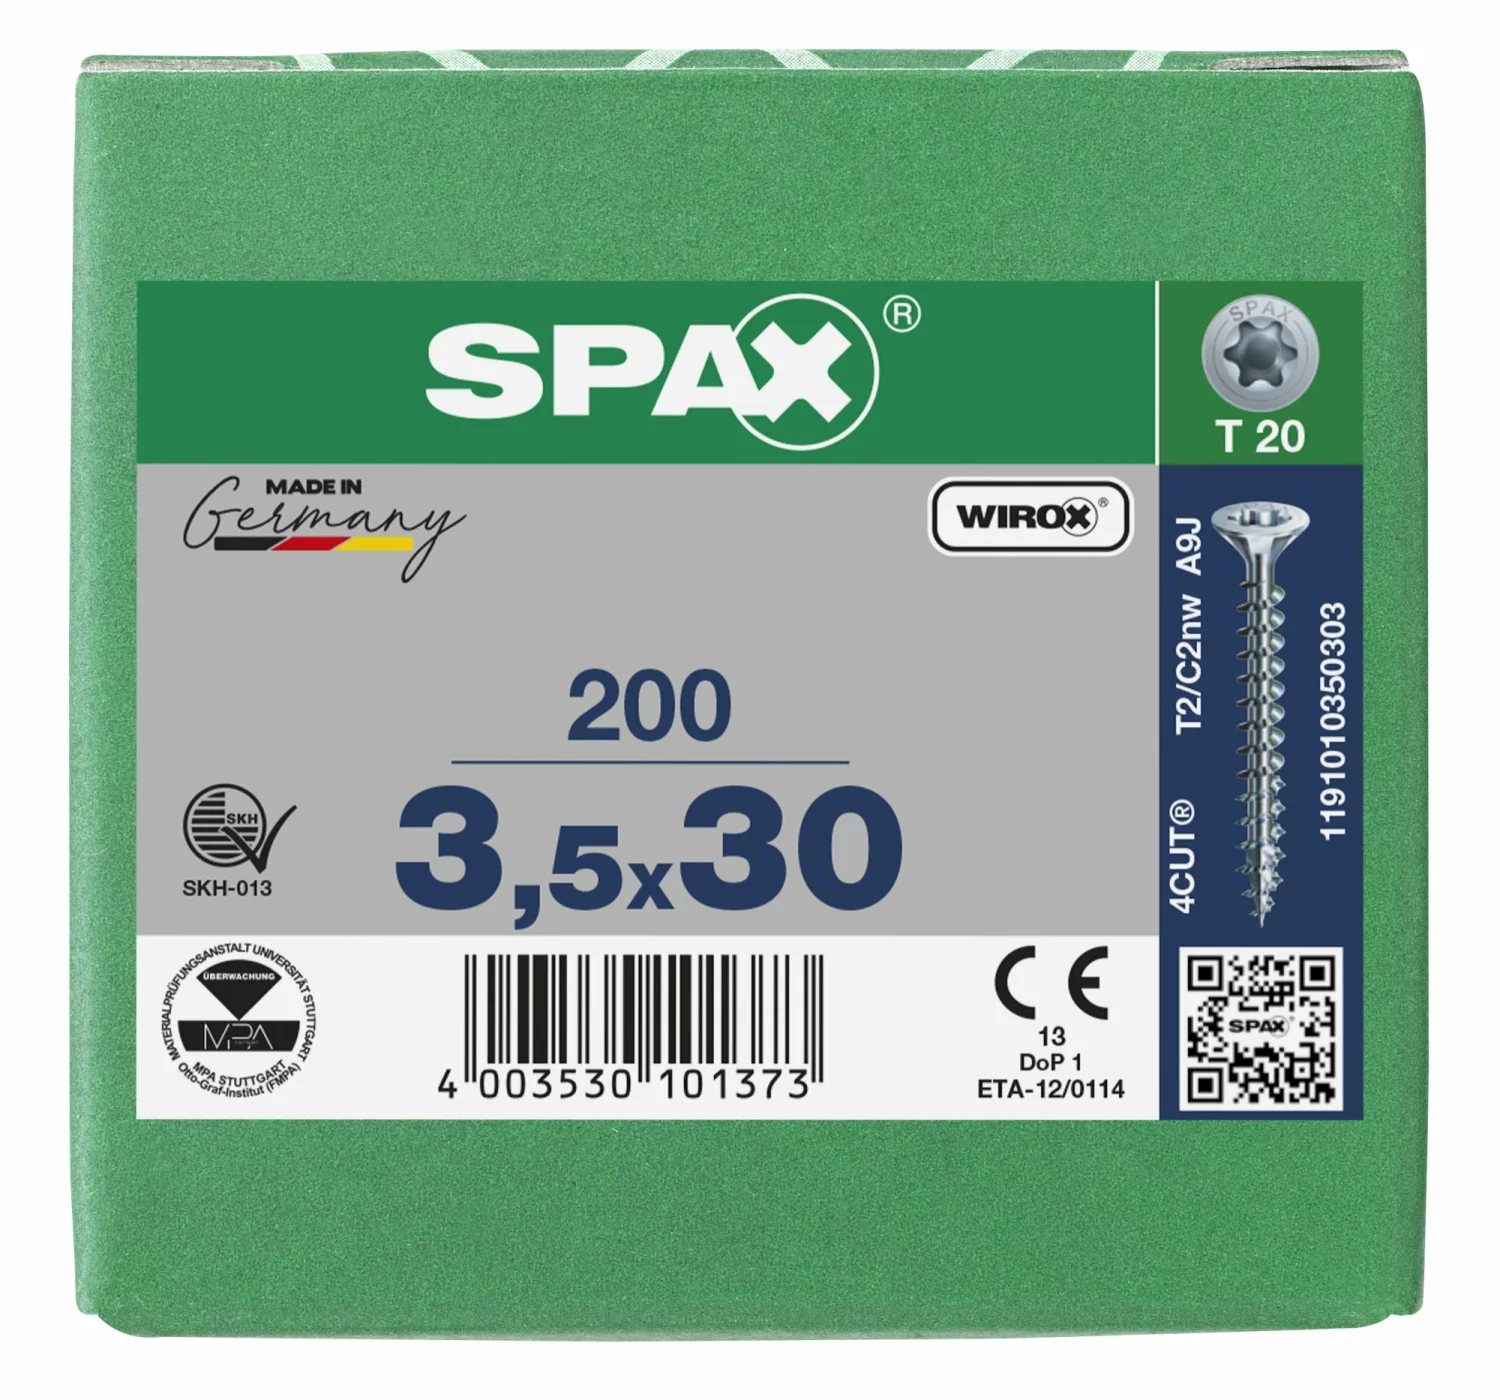 SPAX 1191010350303 Universele schroef, Verzonken kop, 3.5 x 30, Voldraad, T-STAR plus T20 - WIROX - 200 stuks